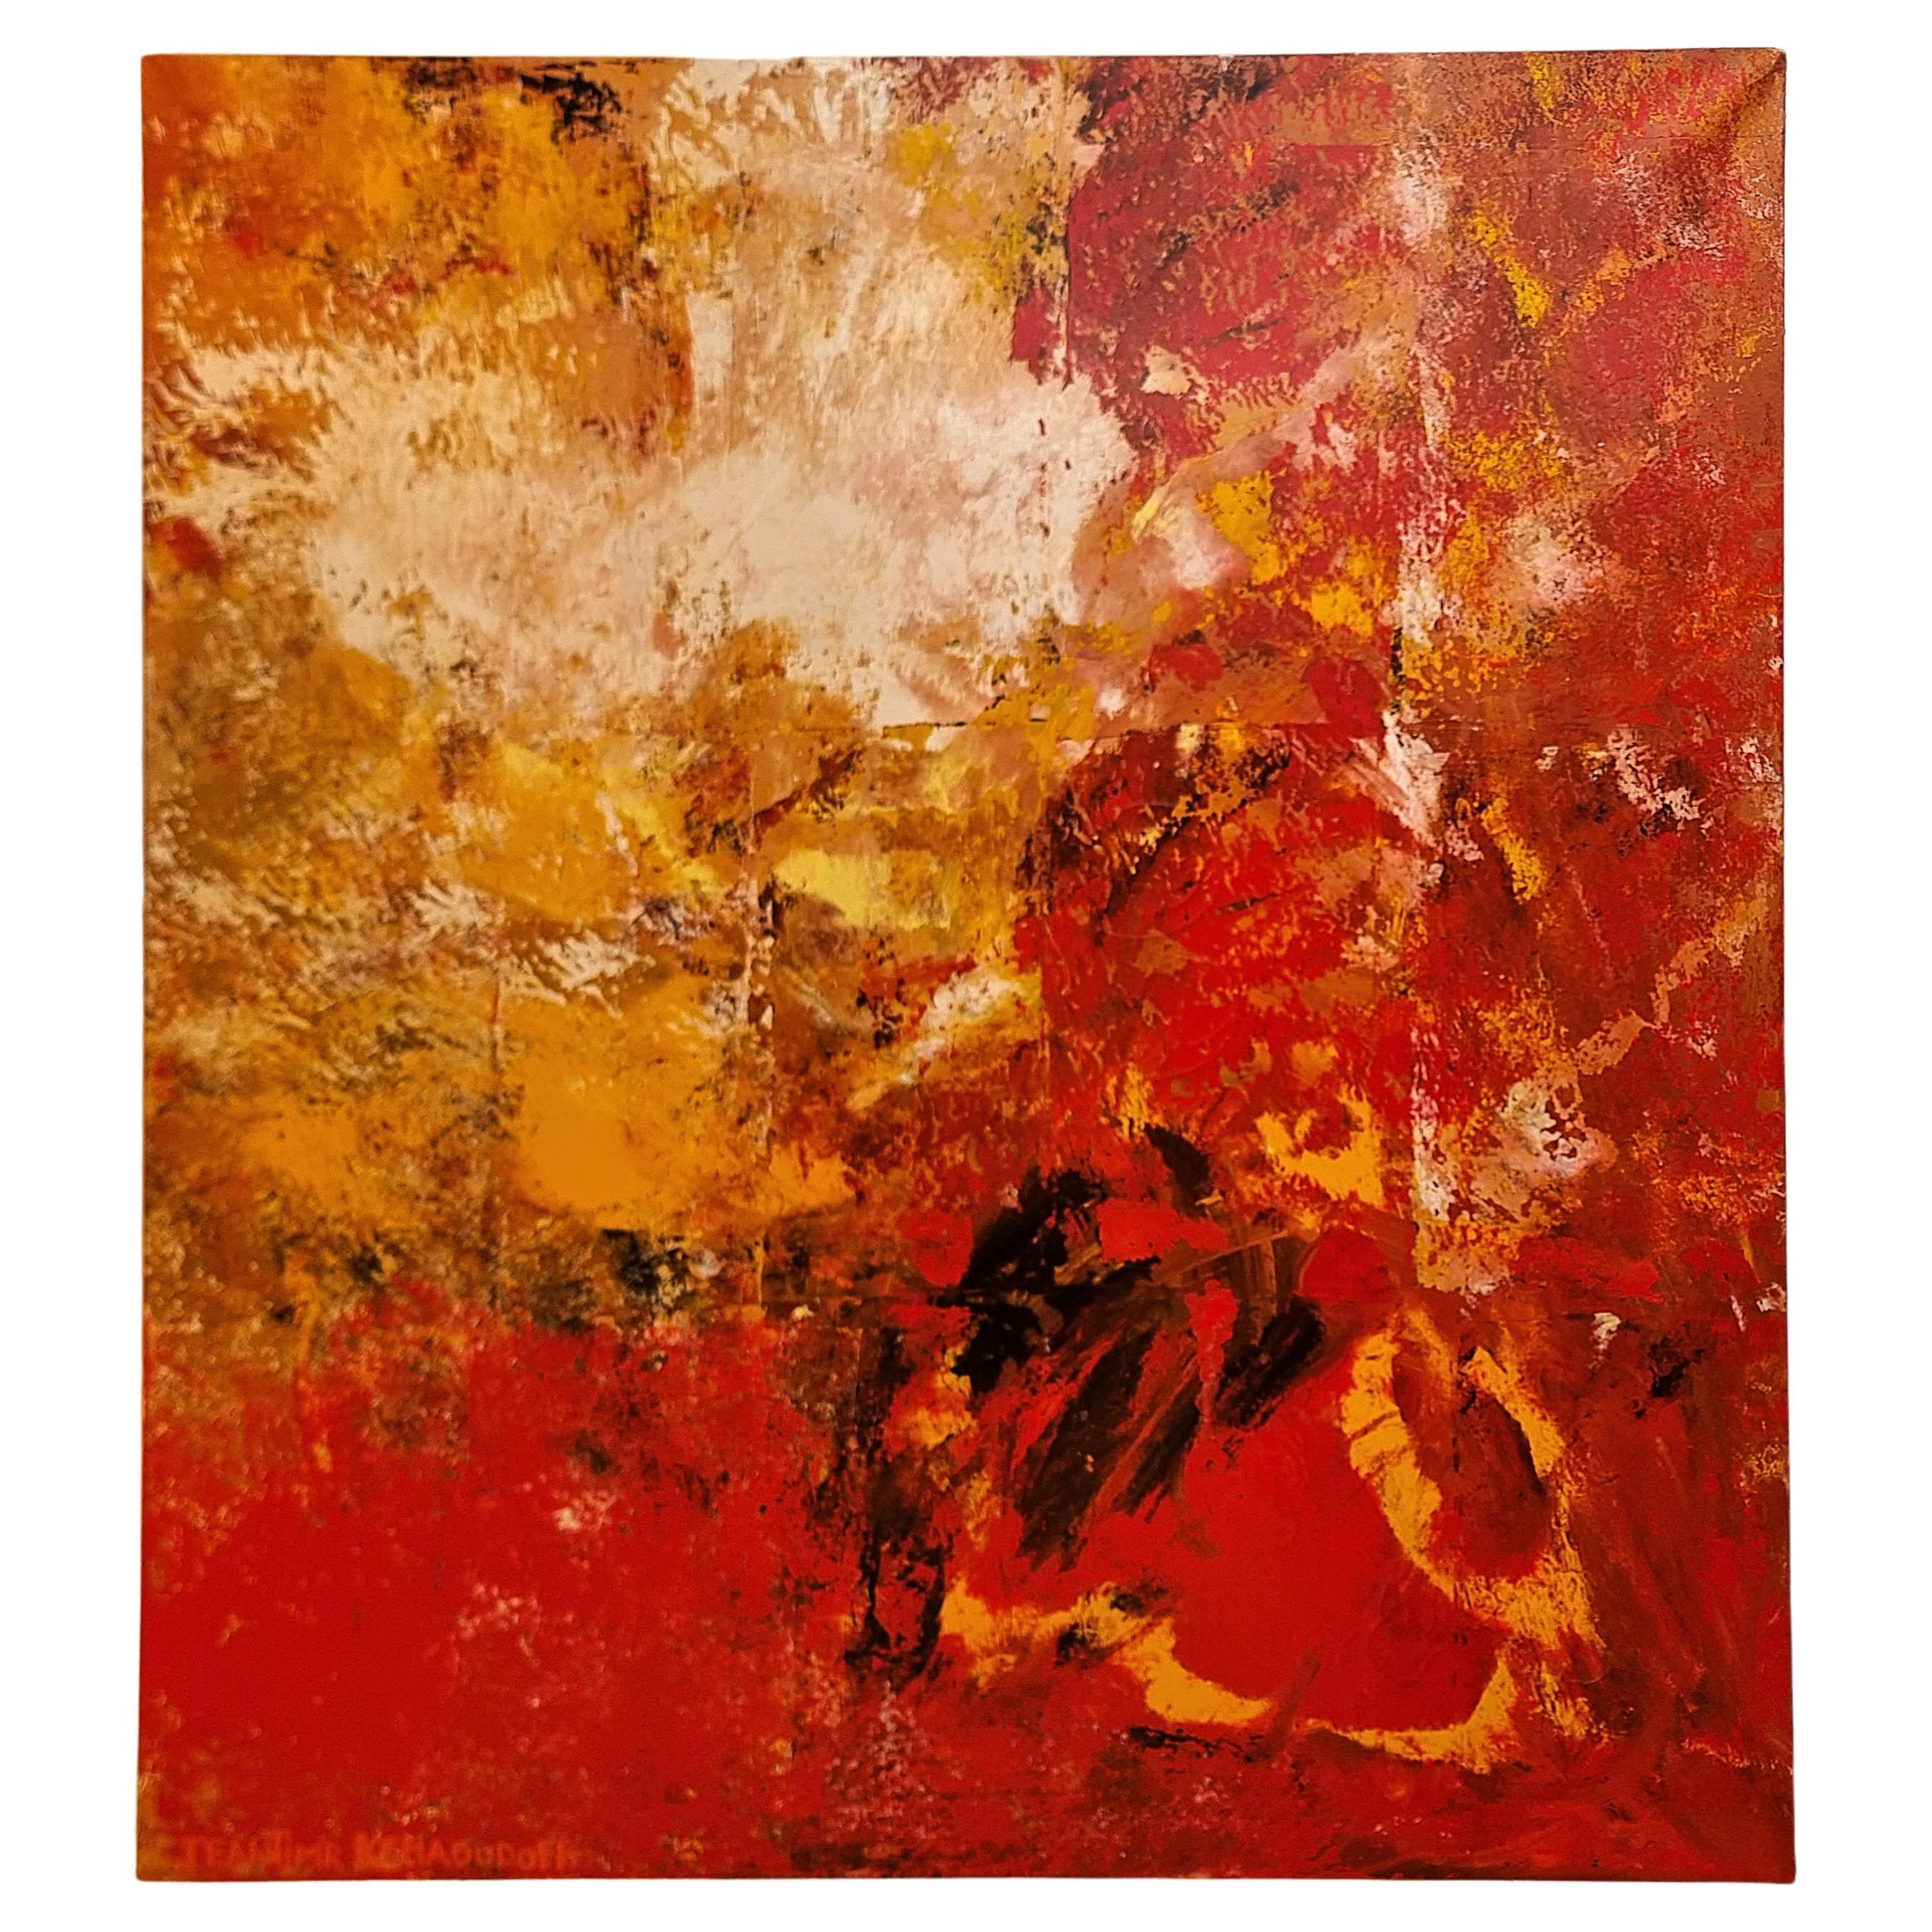 Jeantimir Kchaoudoff - 180*200cm - Mixed Technique On Canvas - 1941-2017 For Sale